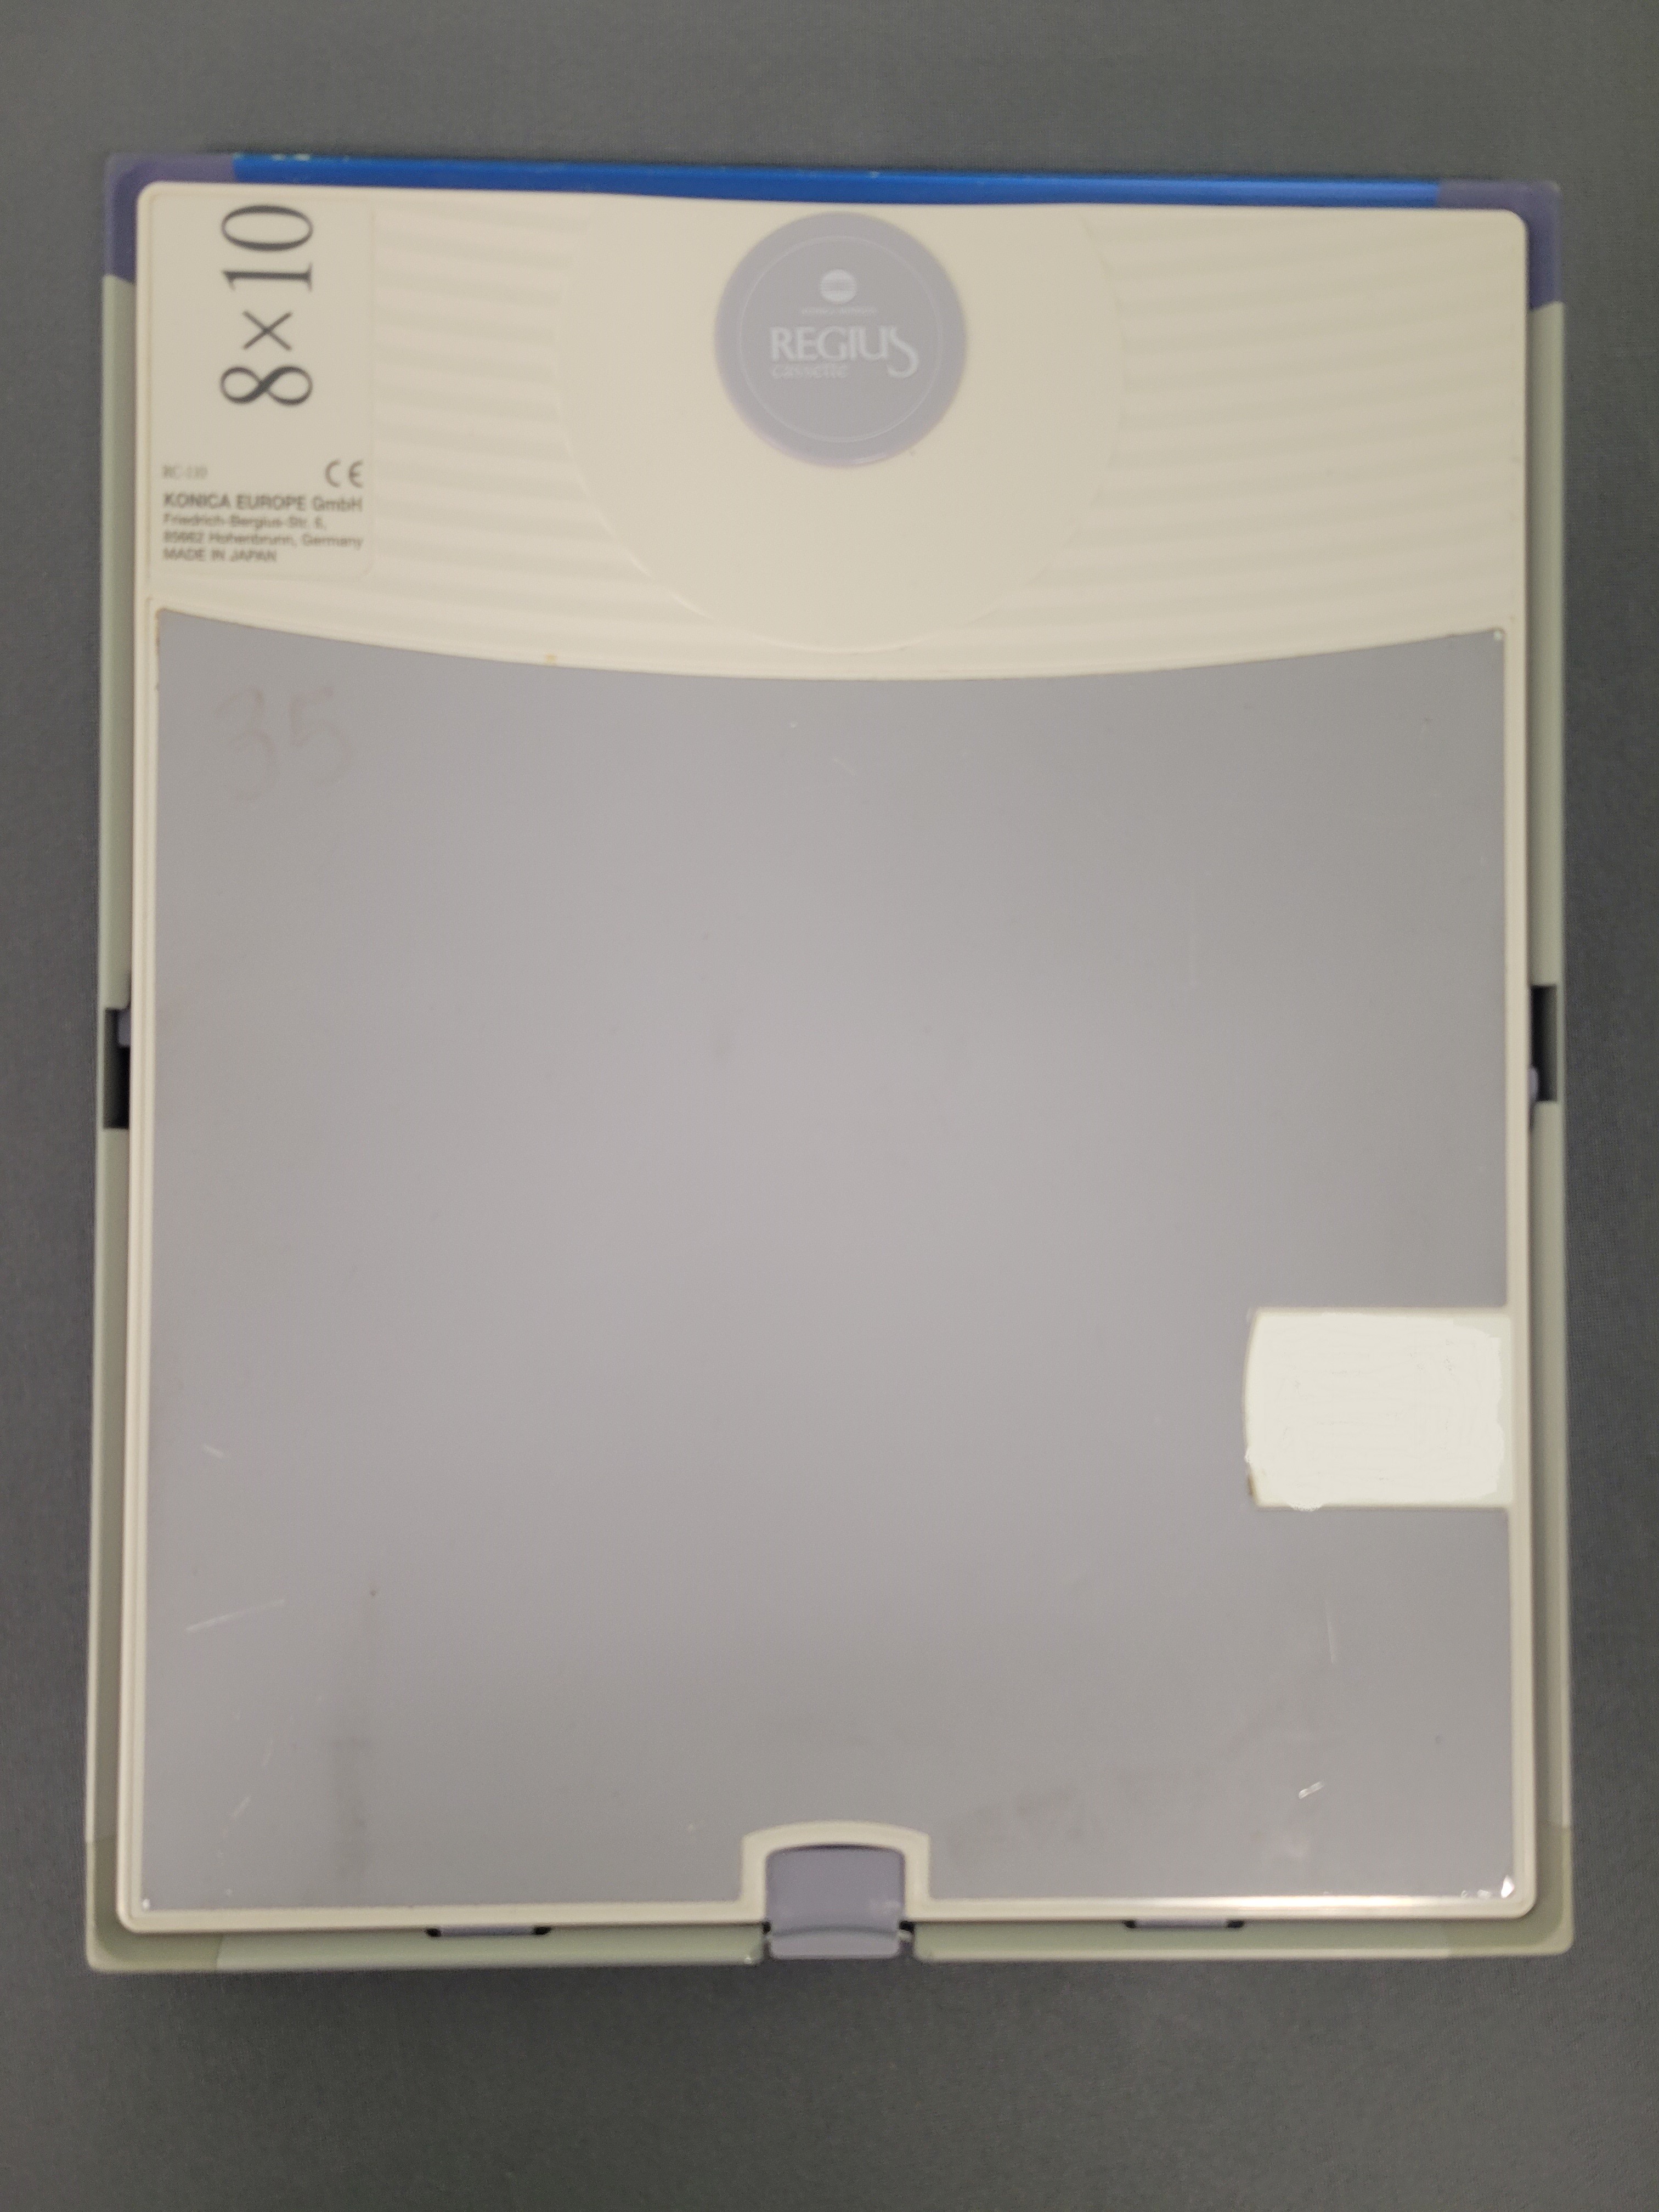 Konica Minolta Regius Cassette 8x10 in, RC-110/RP-3S